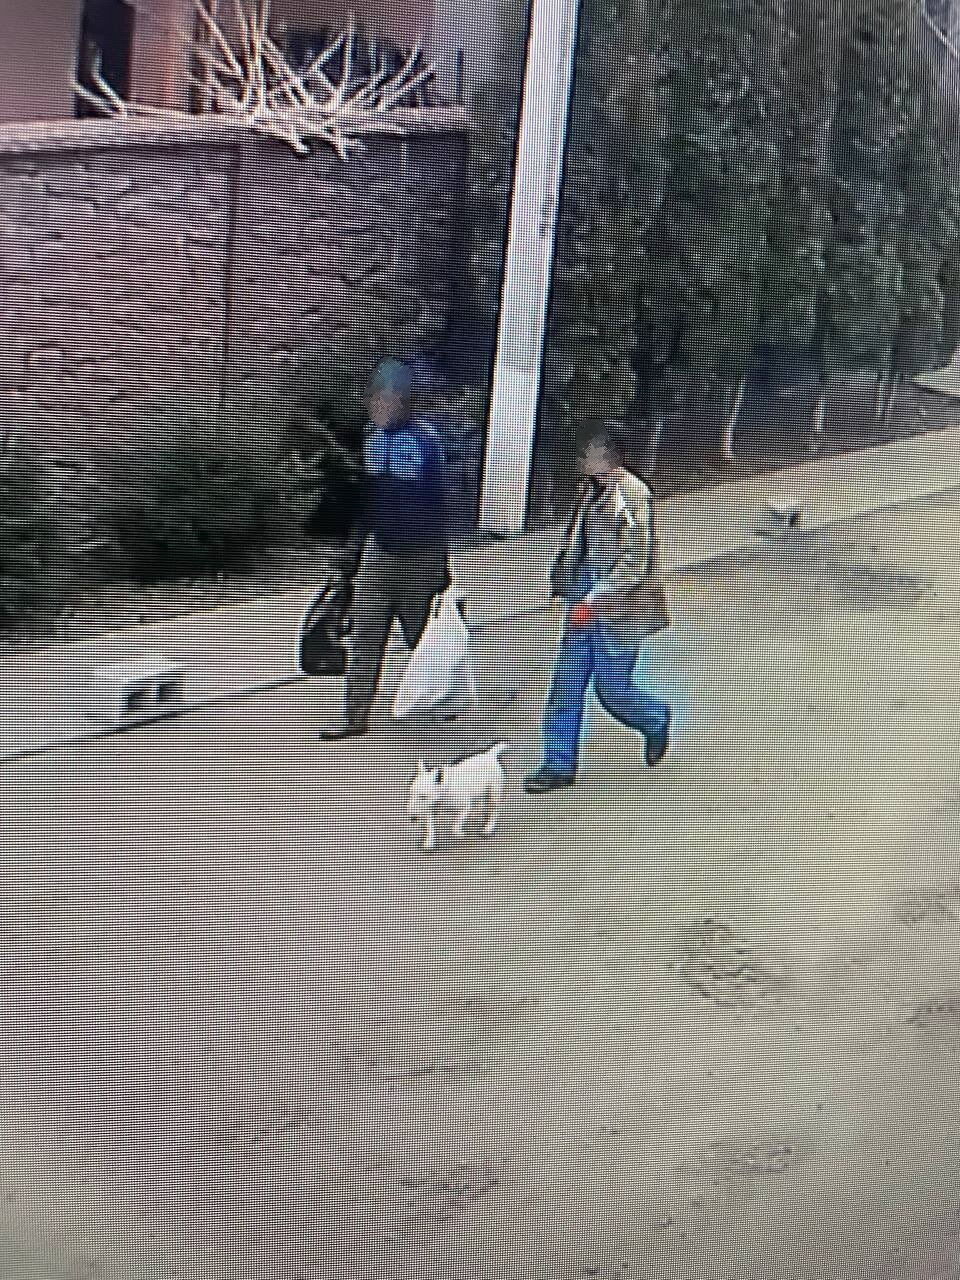 В Киеве украли собаку у звезды фильма "Носорог" и требовали выкуп: известны подробности. Фото и видео